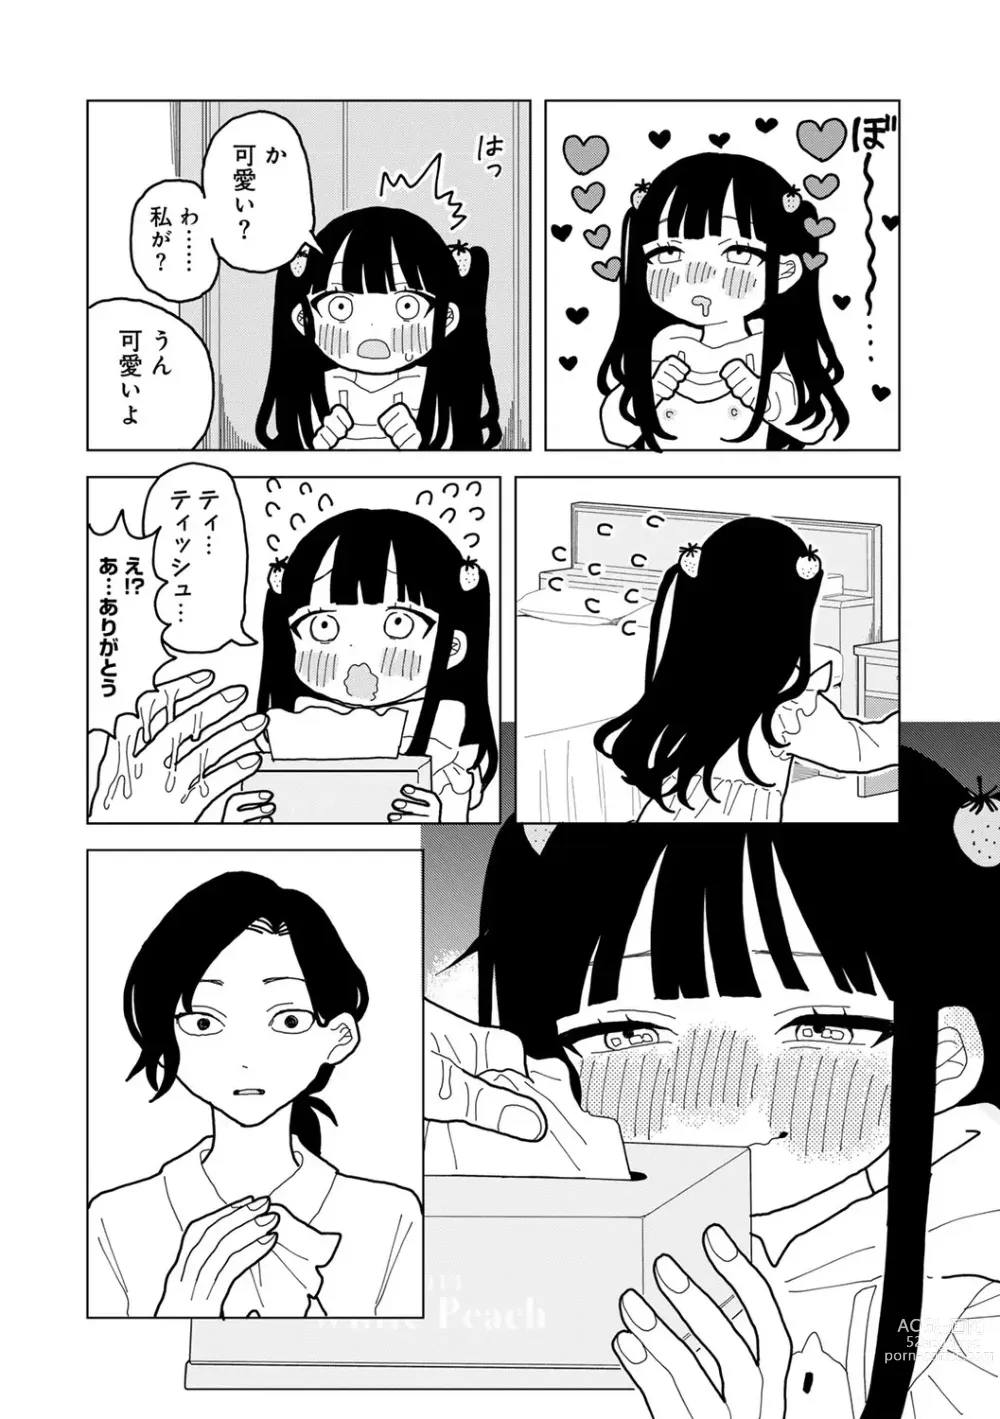 Page 180 of manga COMIC kisshug vol.3